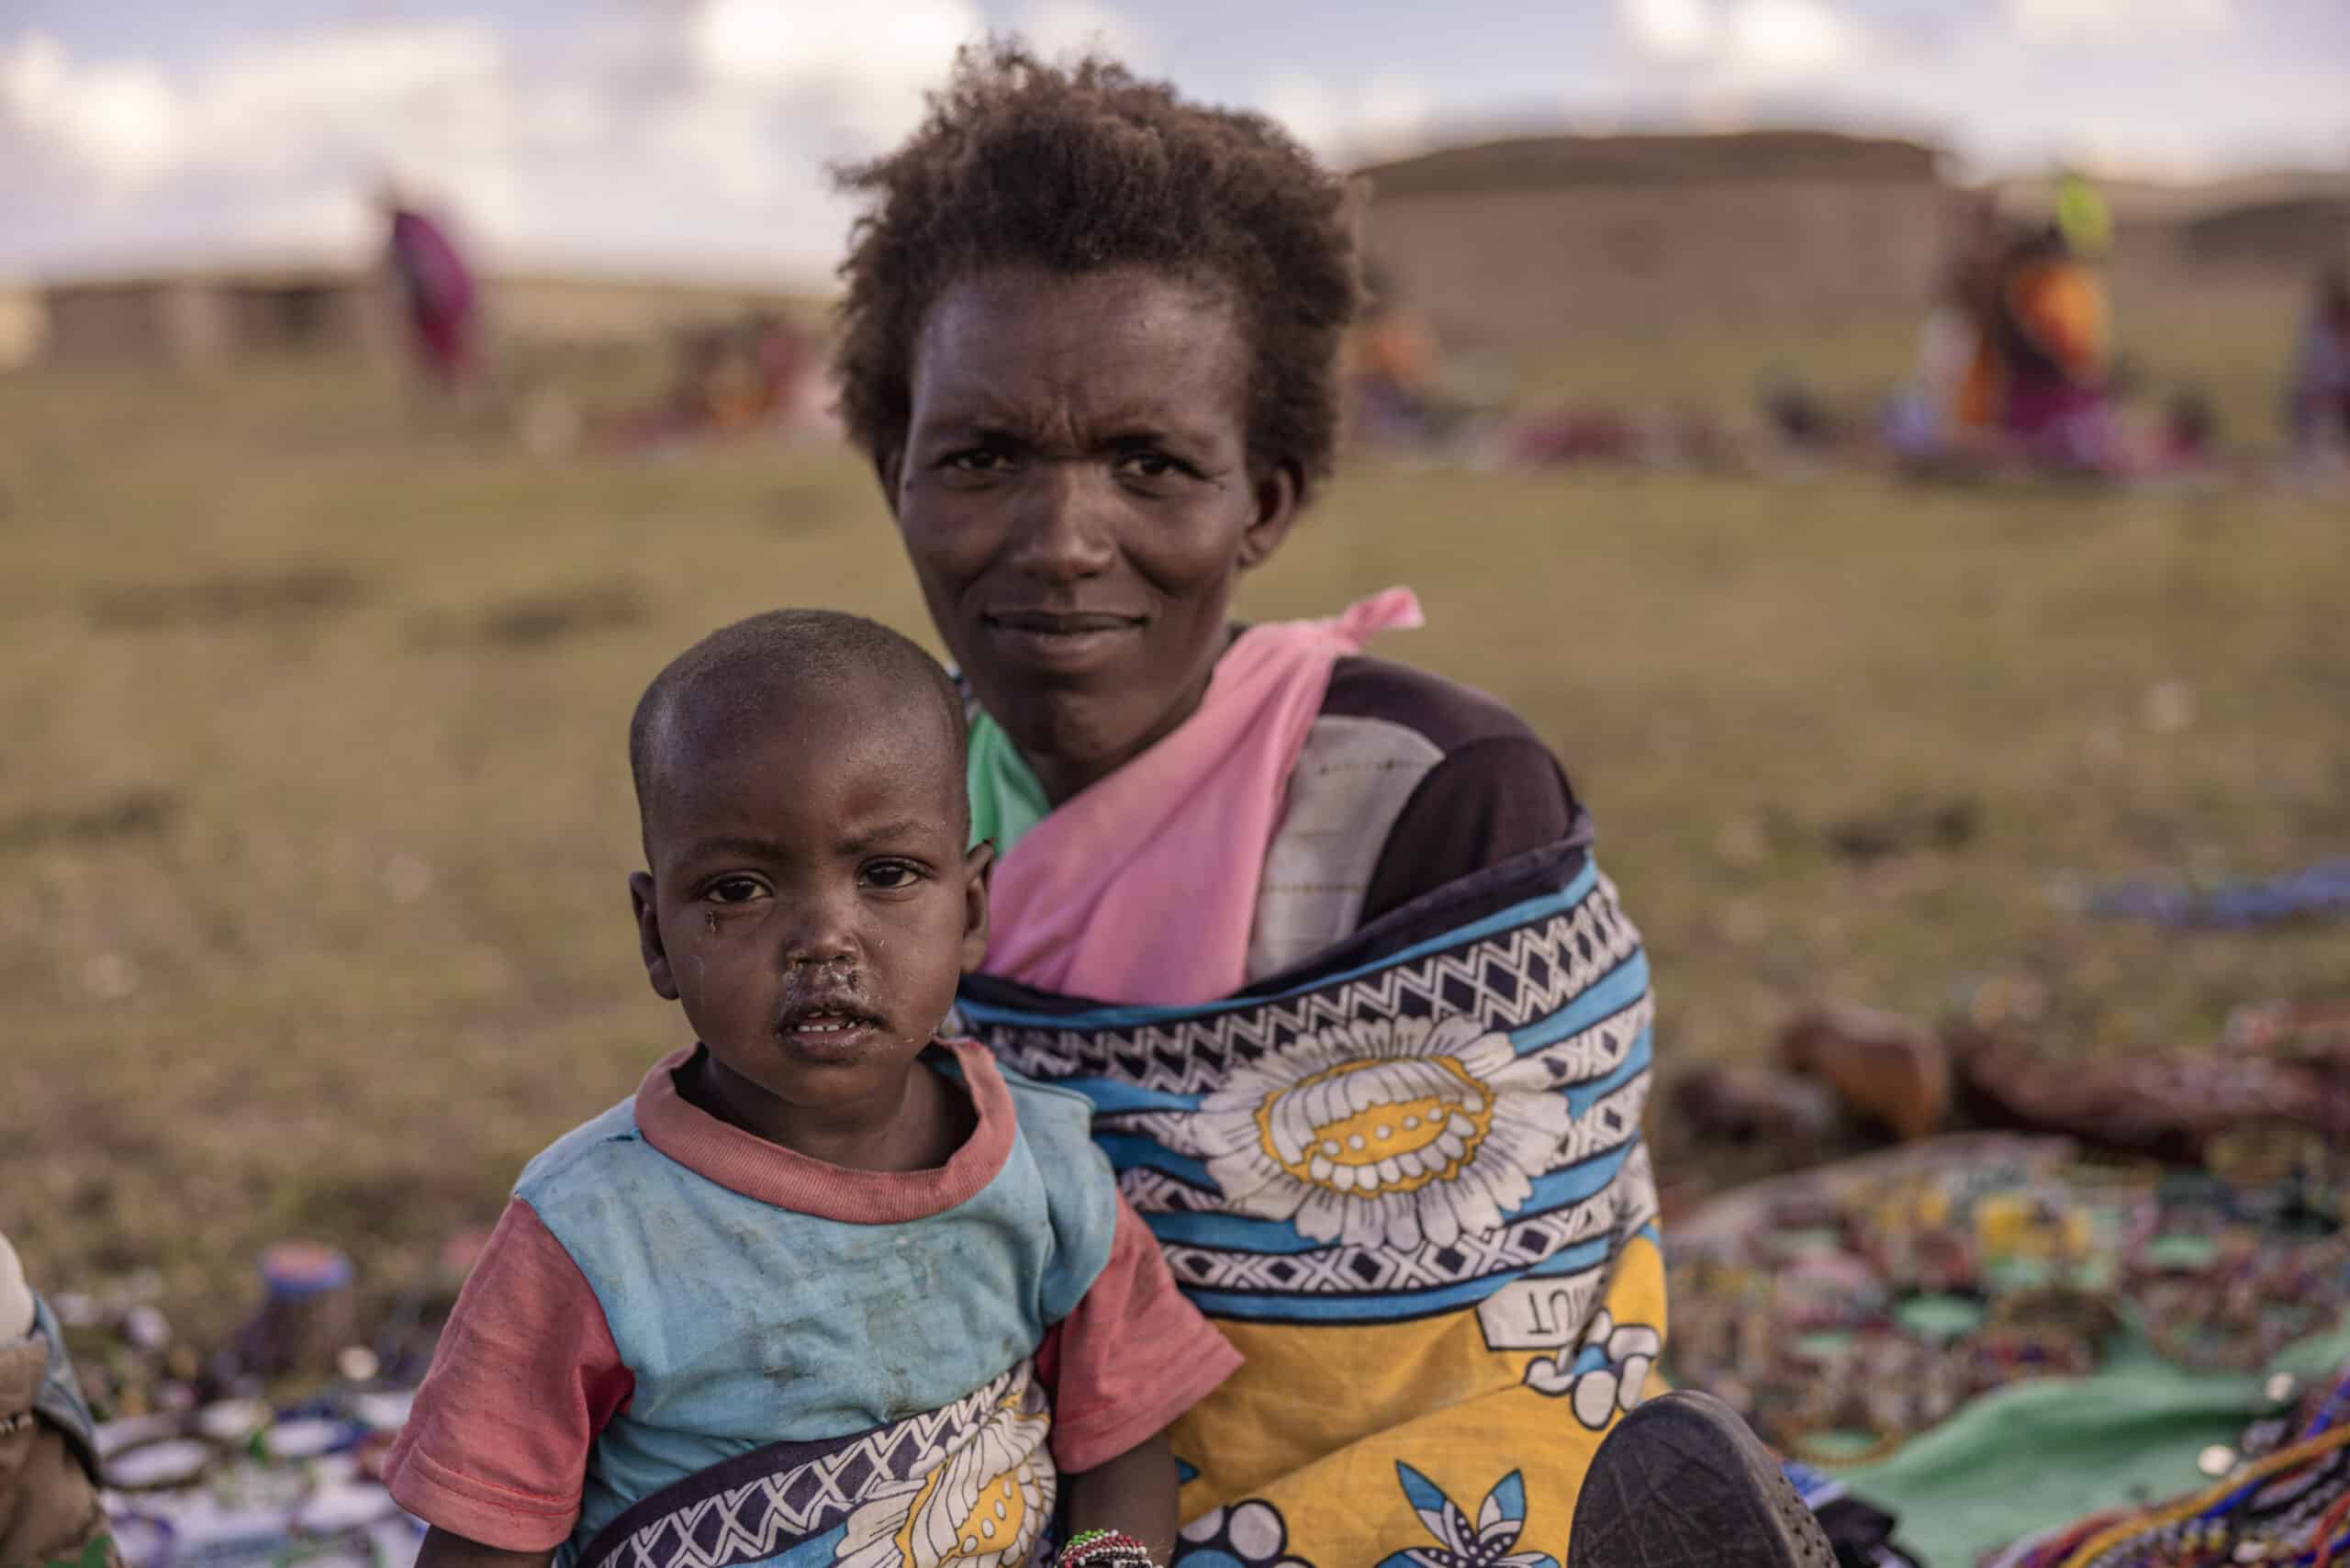 Eine Mutter in bunter Kleidung hält ihr kleines Kind in einer ländlichen Landschaft mit Hütten und Menschen im Hintergrund. Beide haben nachdenkliche Ausdrücke. © Fotografie Tomas Rodriguez